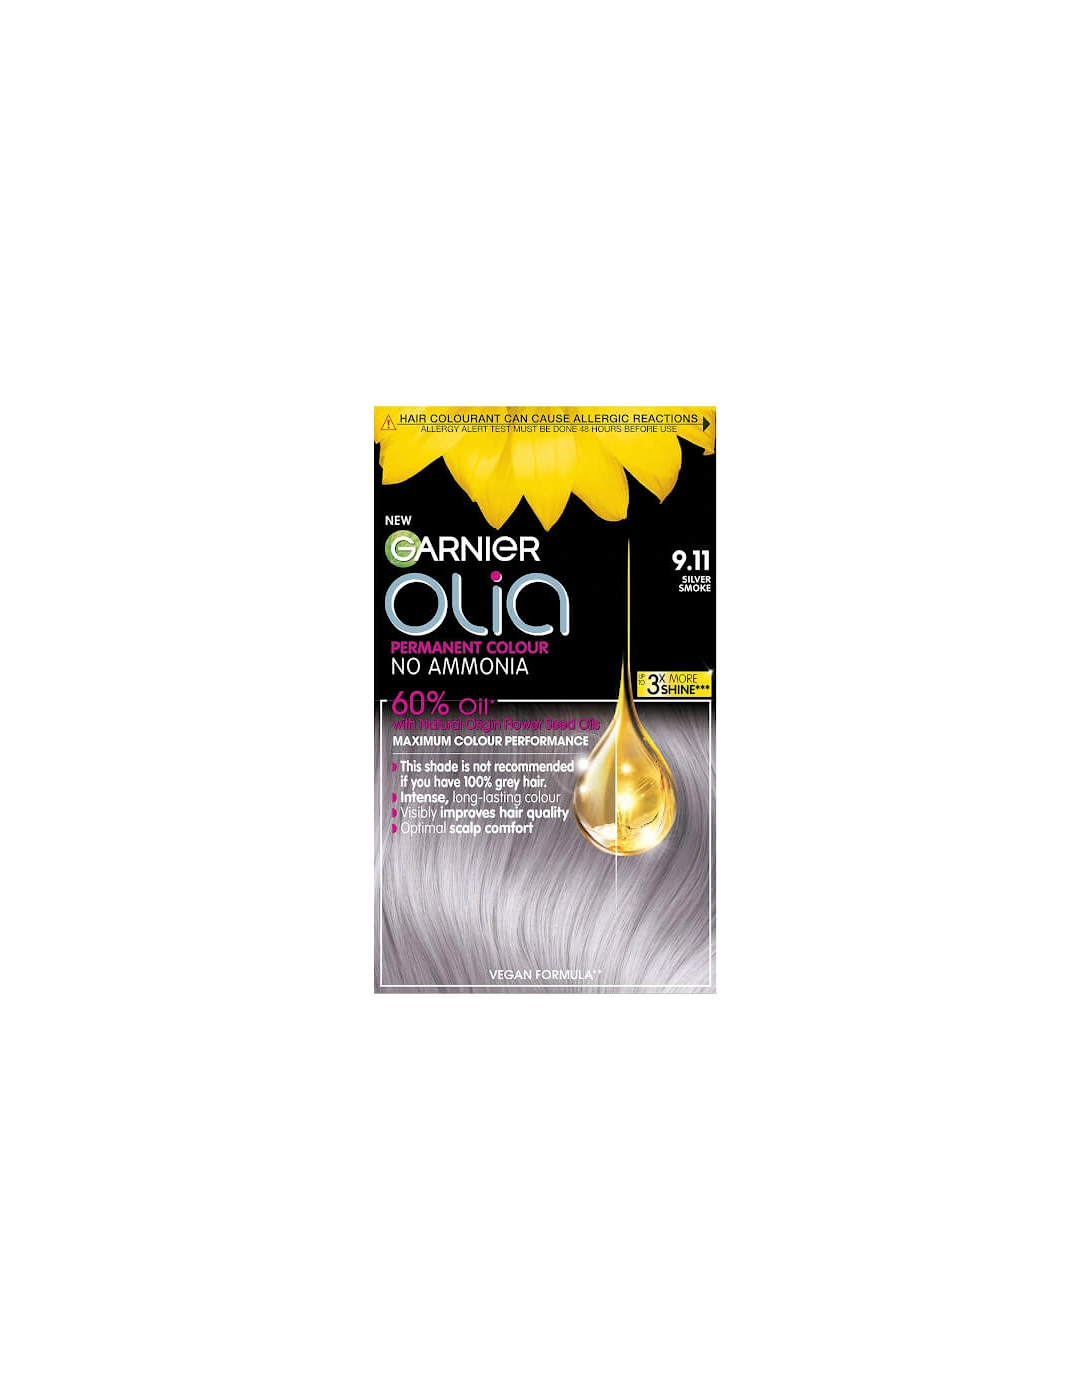 Olia Permanent Hair Dye - 9.11 Metallic Silver, 2 of 1